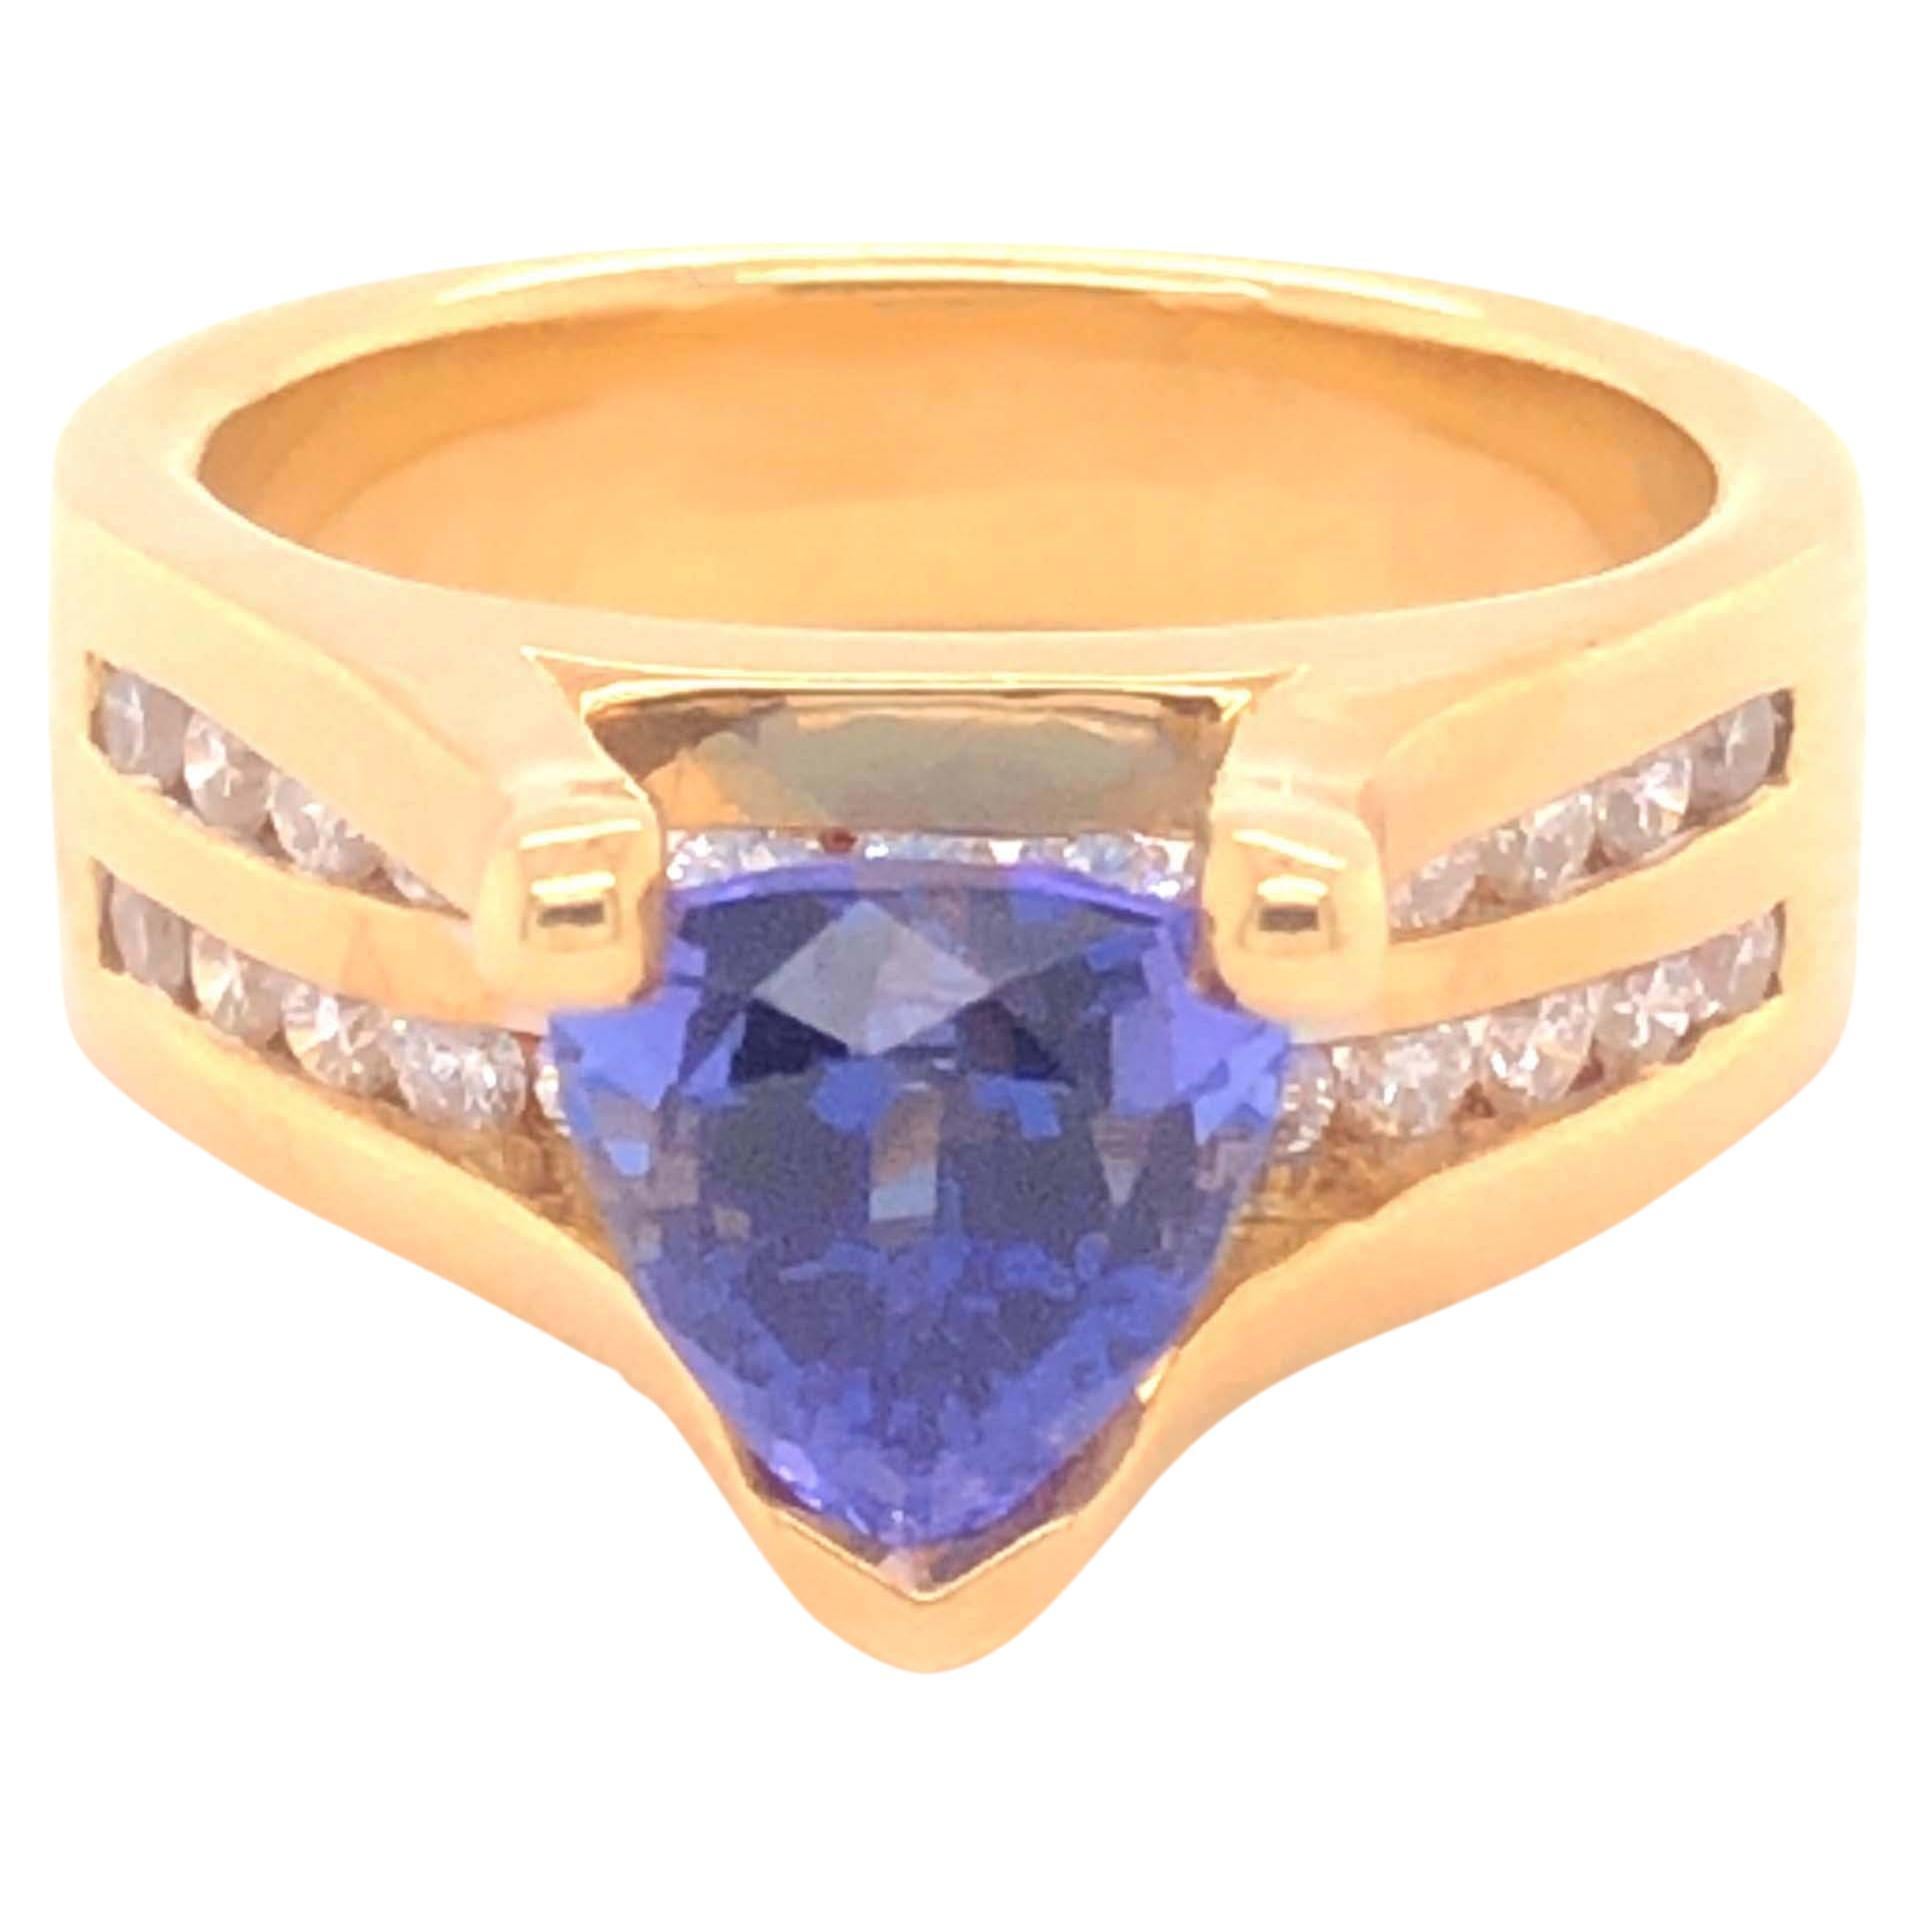 Bague en or jaune 18 carats avec tanzanite bleue, violette et brillante et diamants